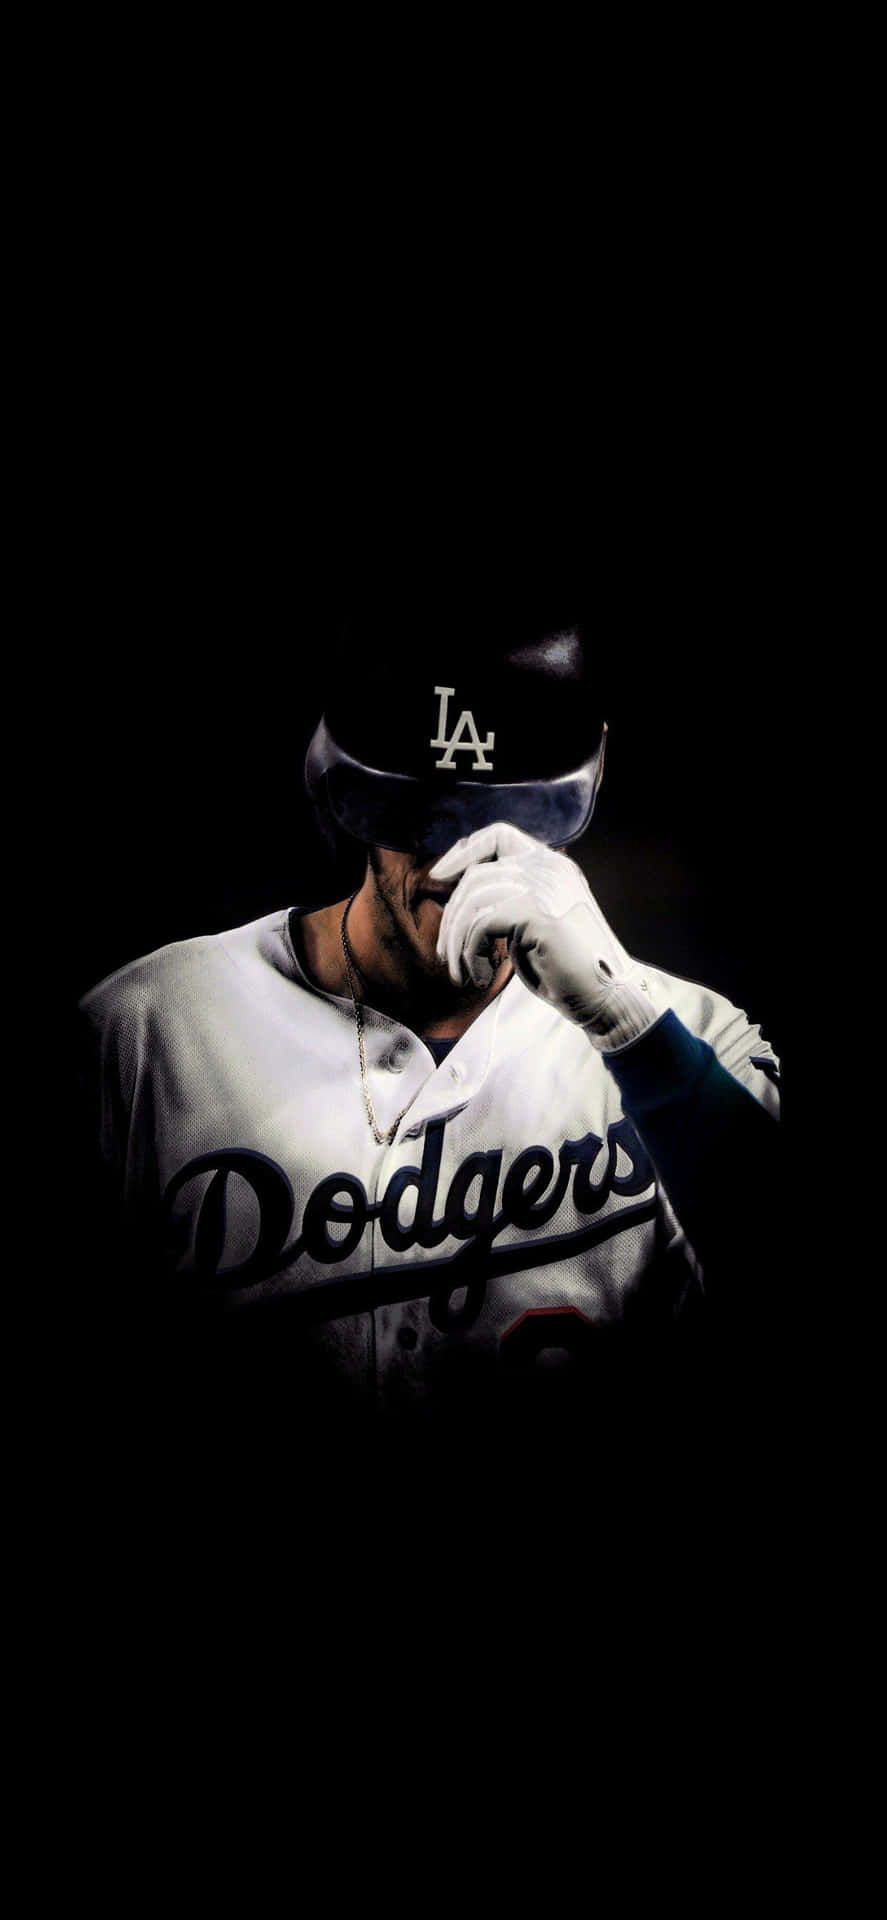 Dodgers iPhone Cody Bellinger Wallpaper